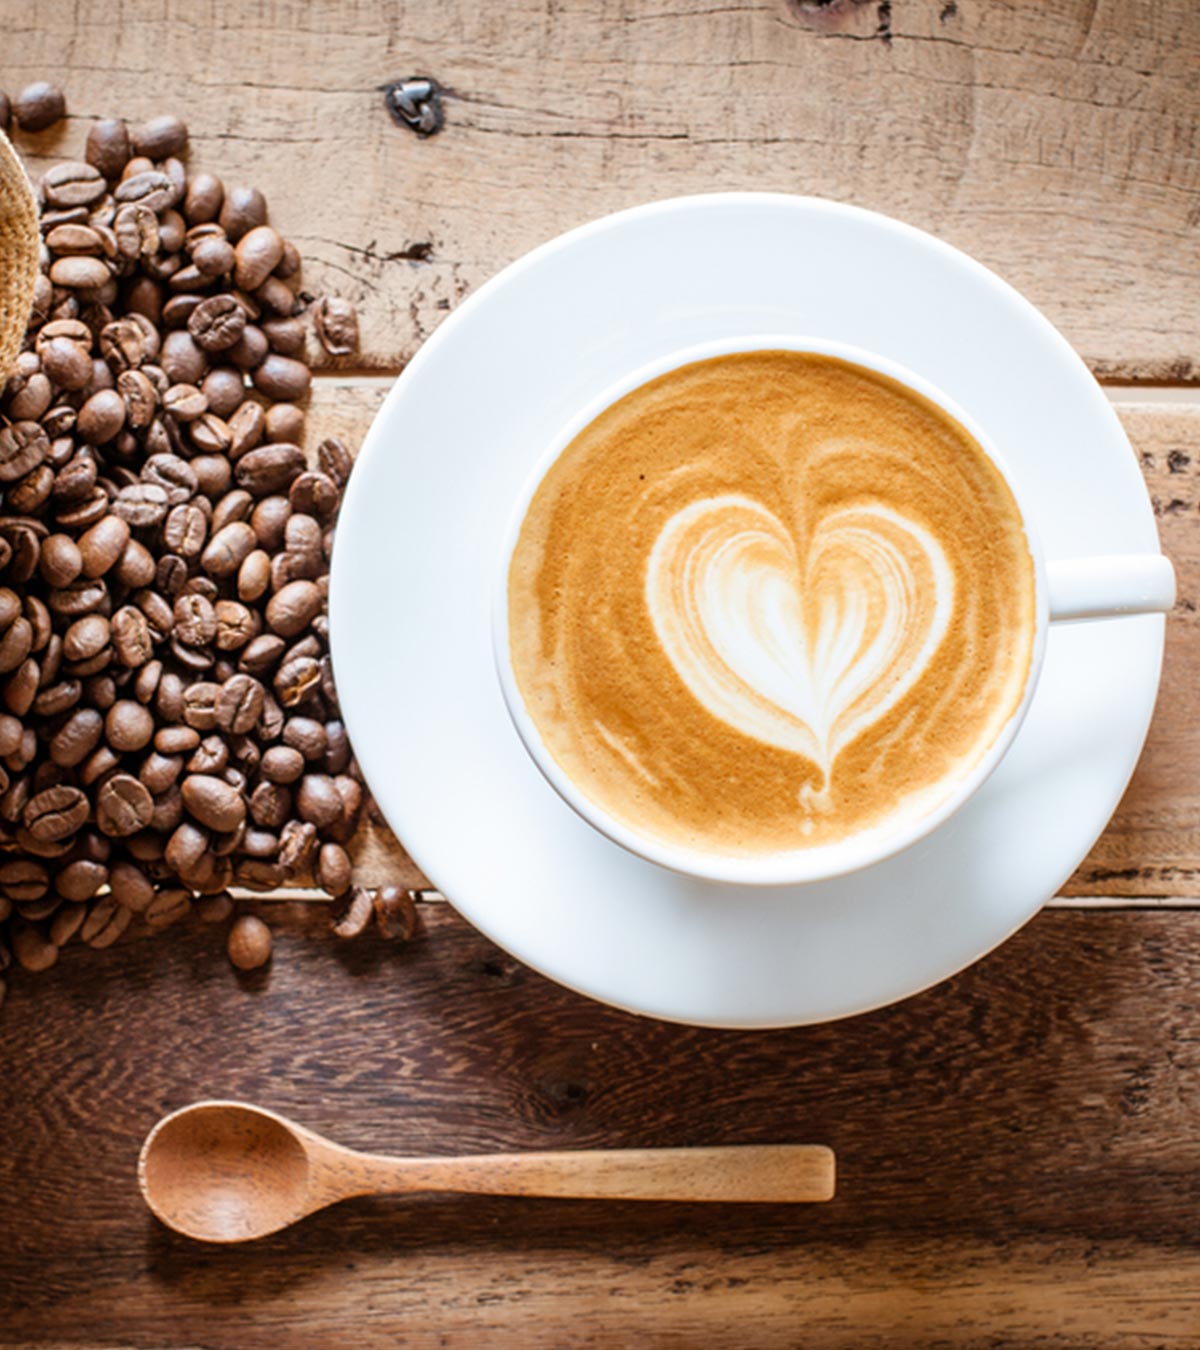 गर्भावस्था में कॉफी का सेवन करना चाहिए या नहीं?印地语孕妇喝咖啡